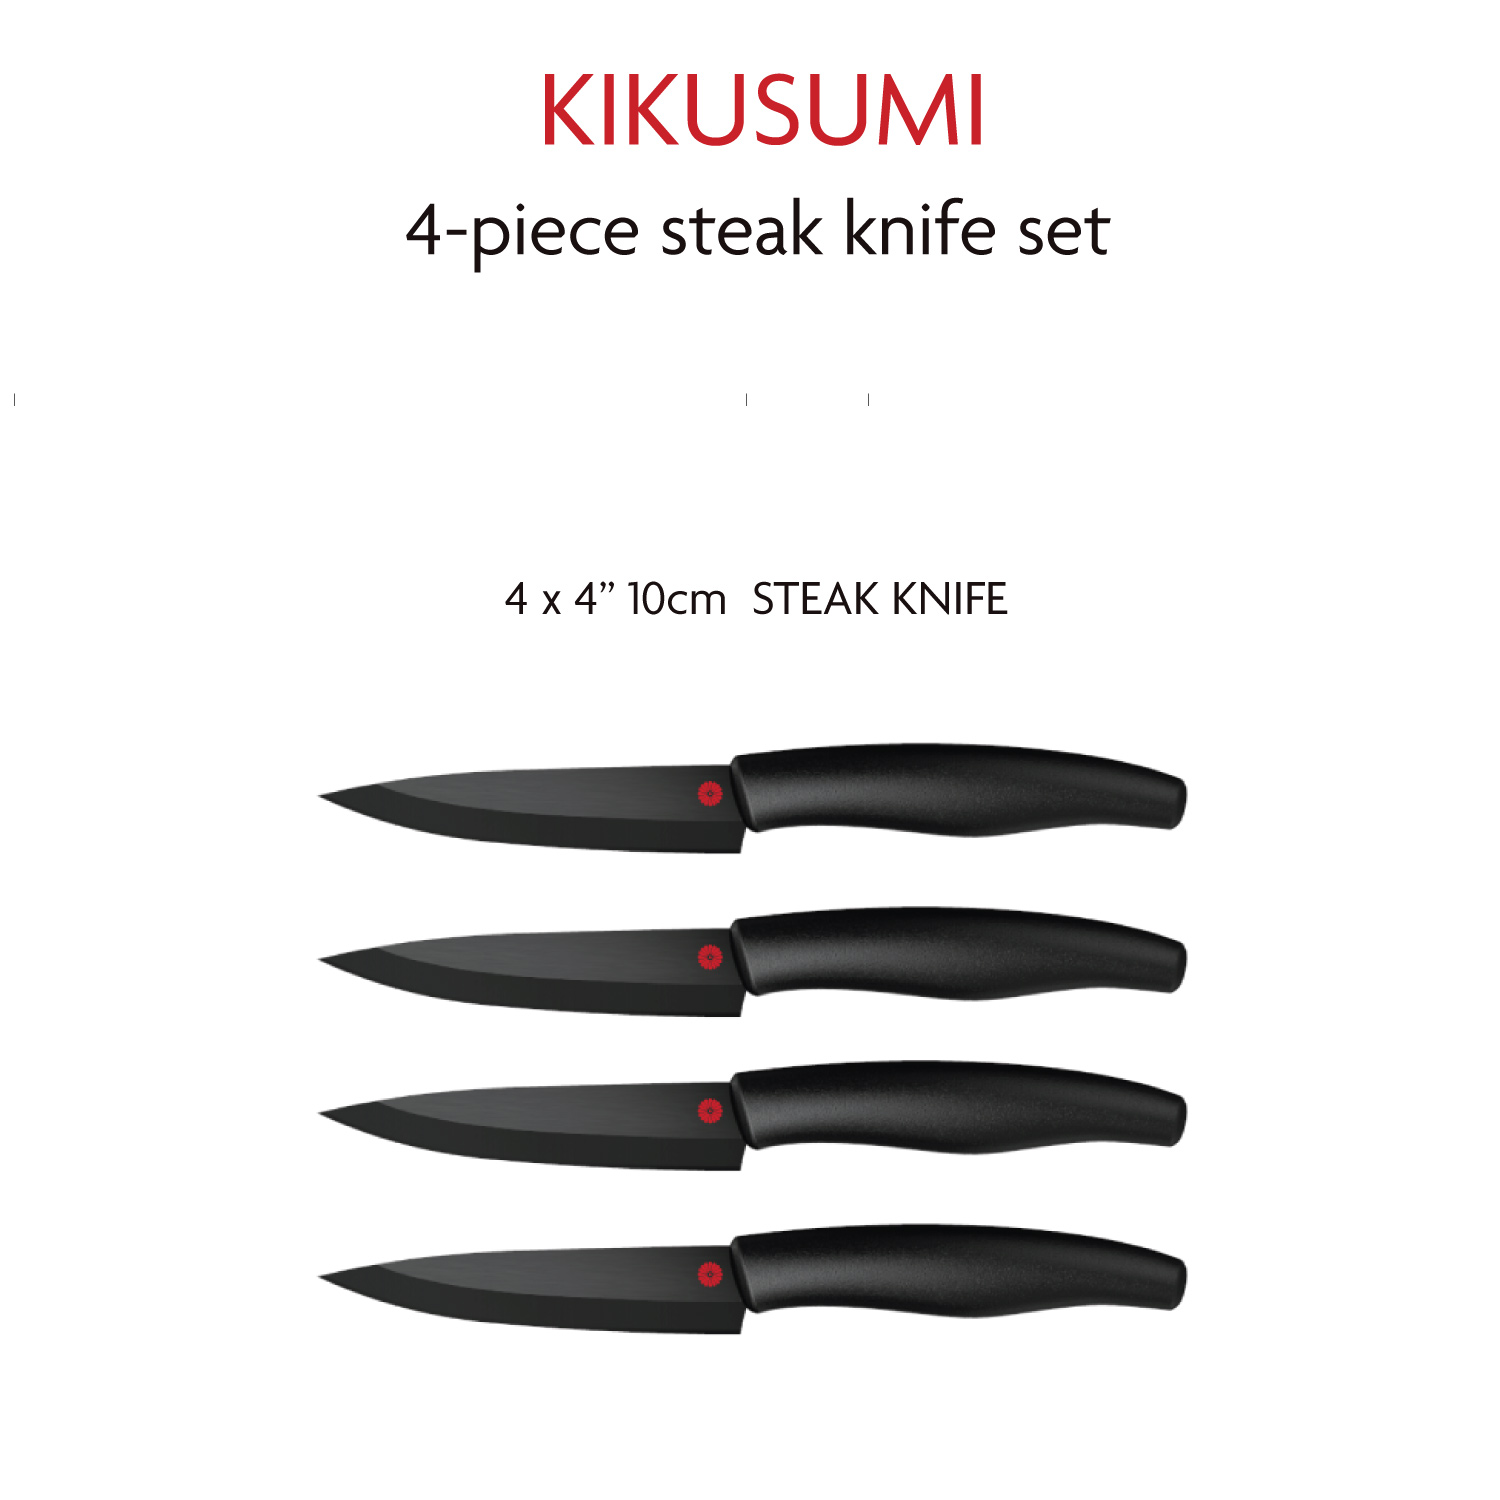 https://kikusumiknife.com/wp-content/uploads/2021/03/4SKS-SB-Steak-Details.jpg